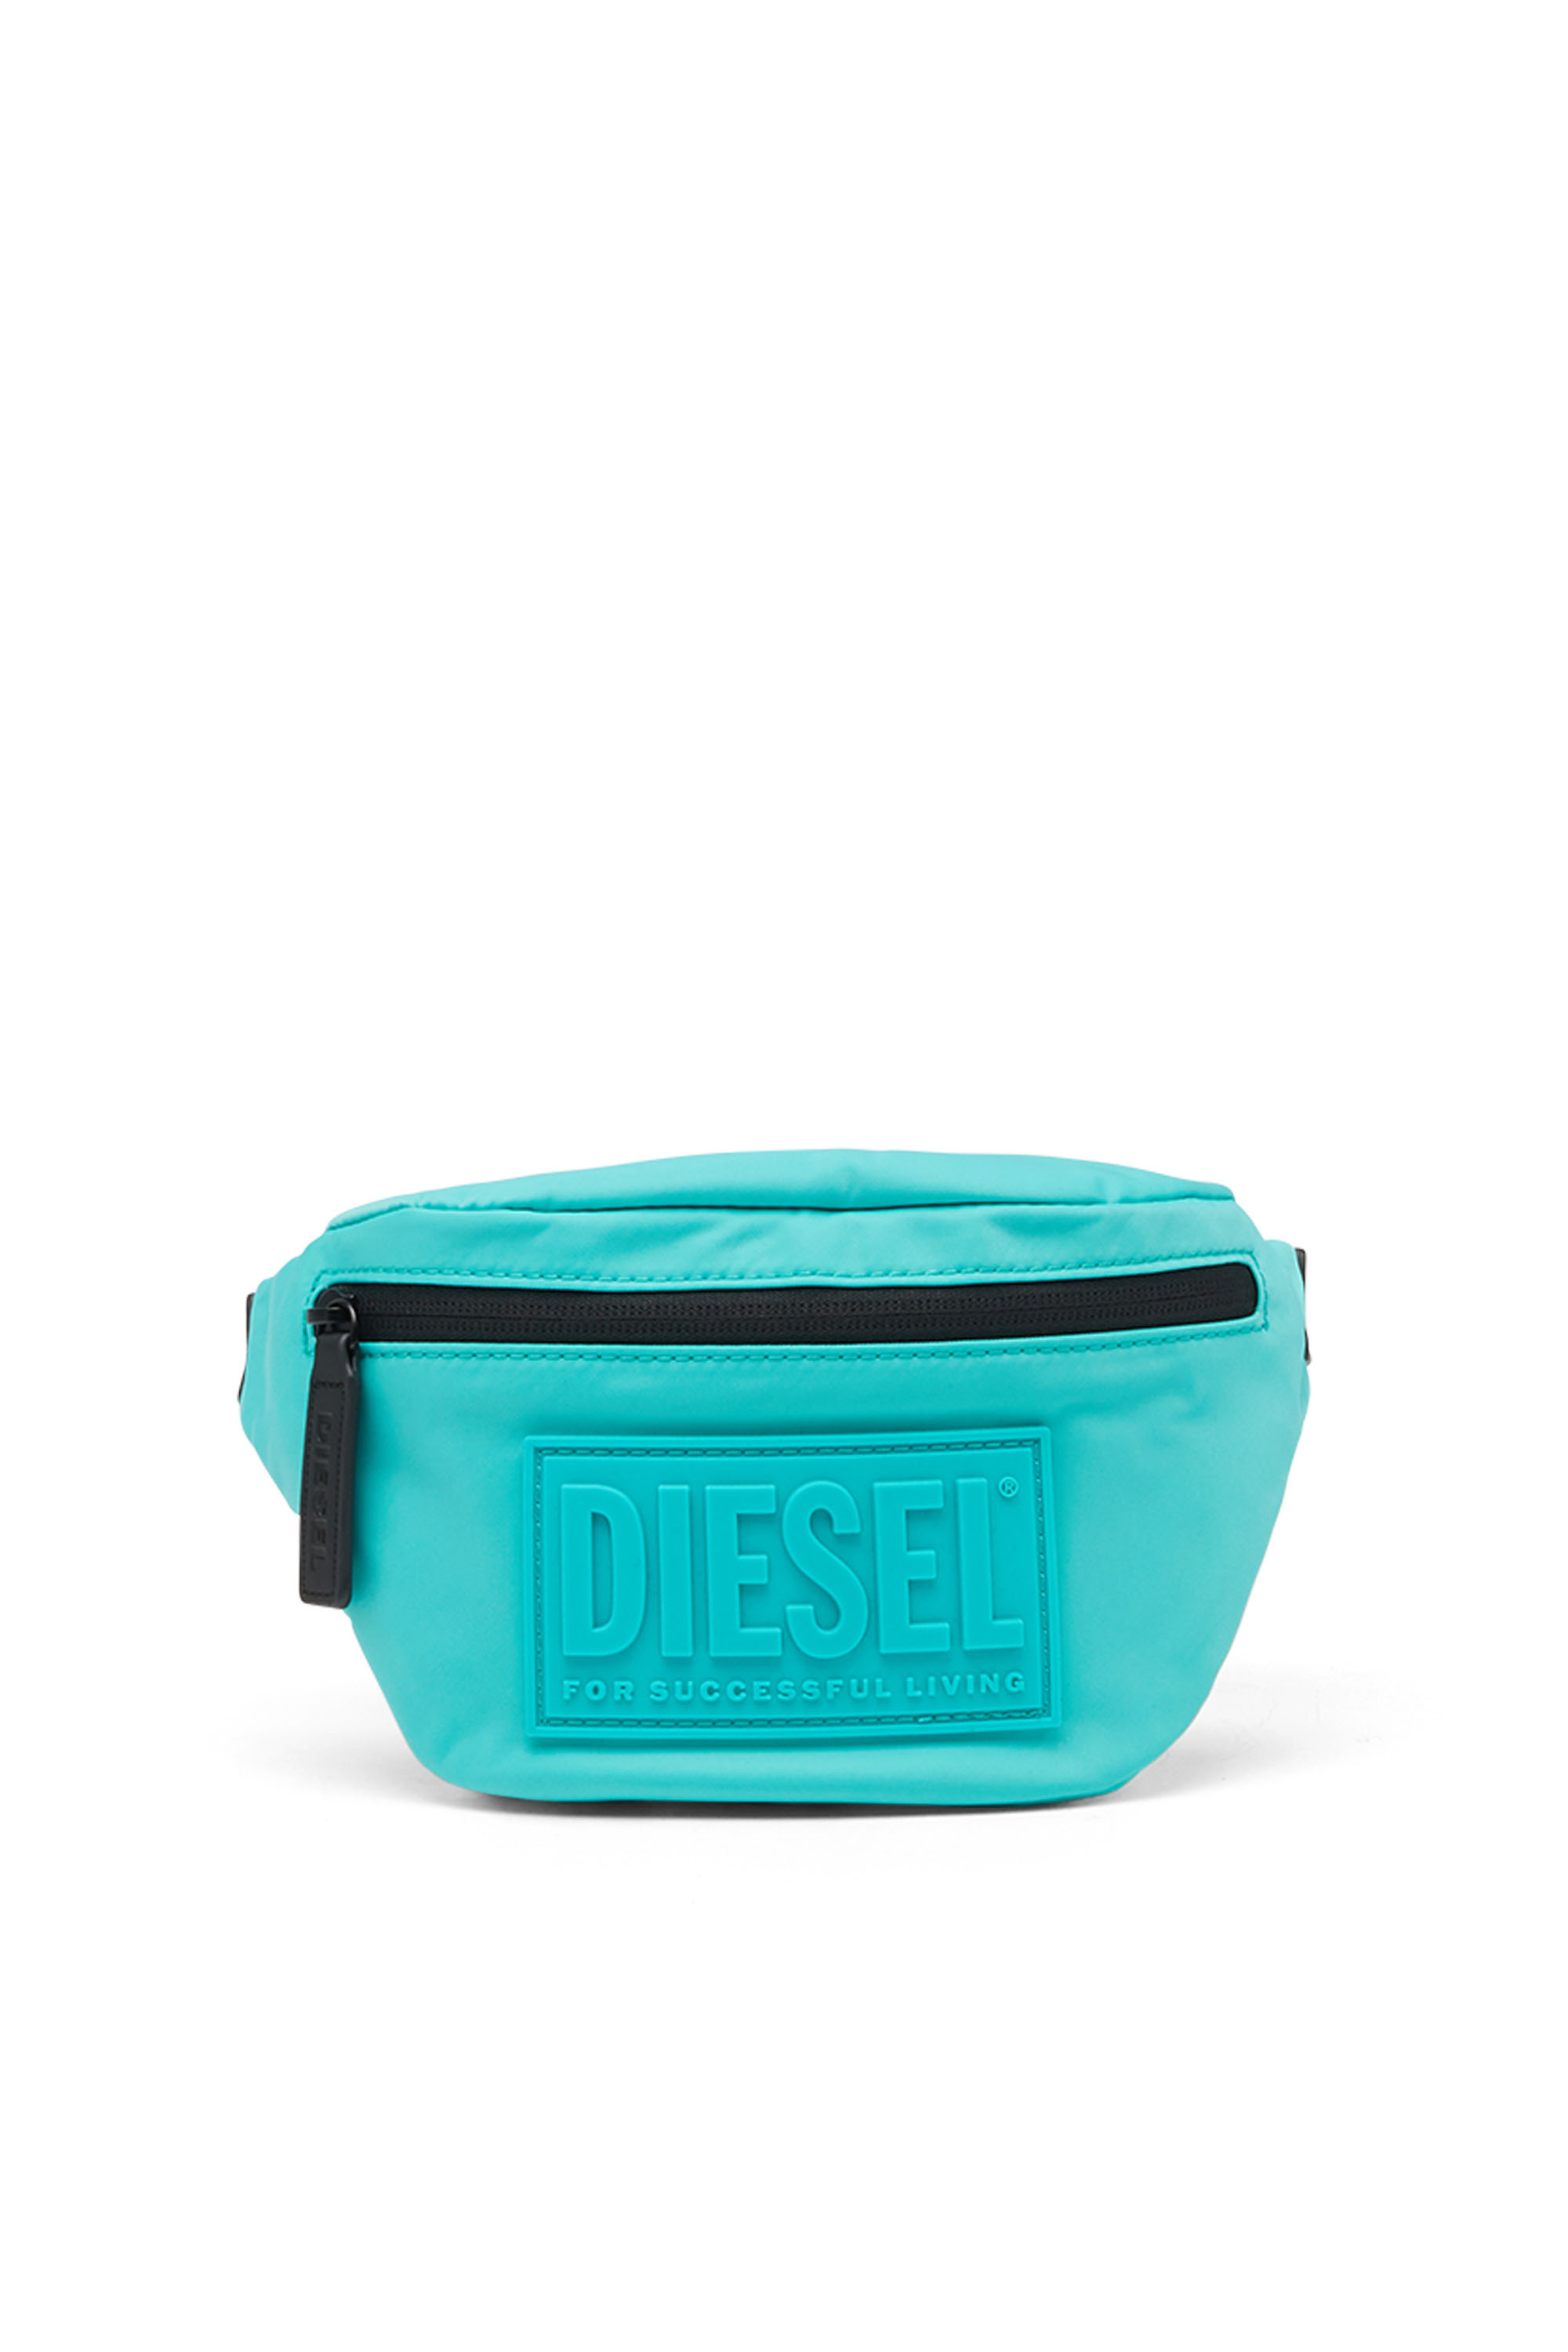 Diesel - BELTB55, Azure - Image 1